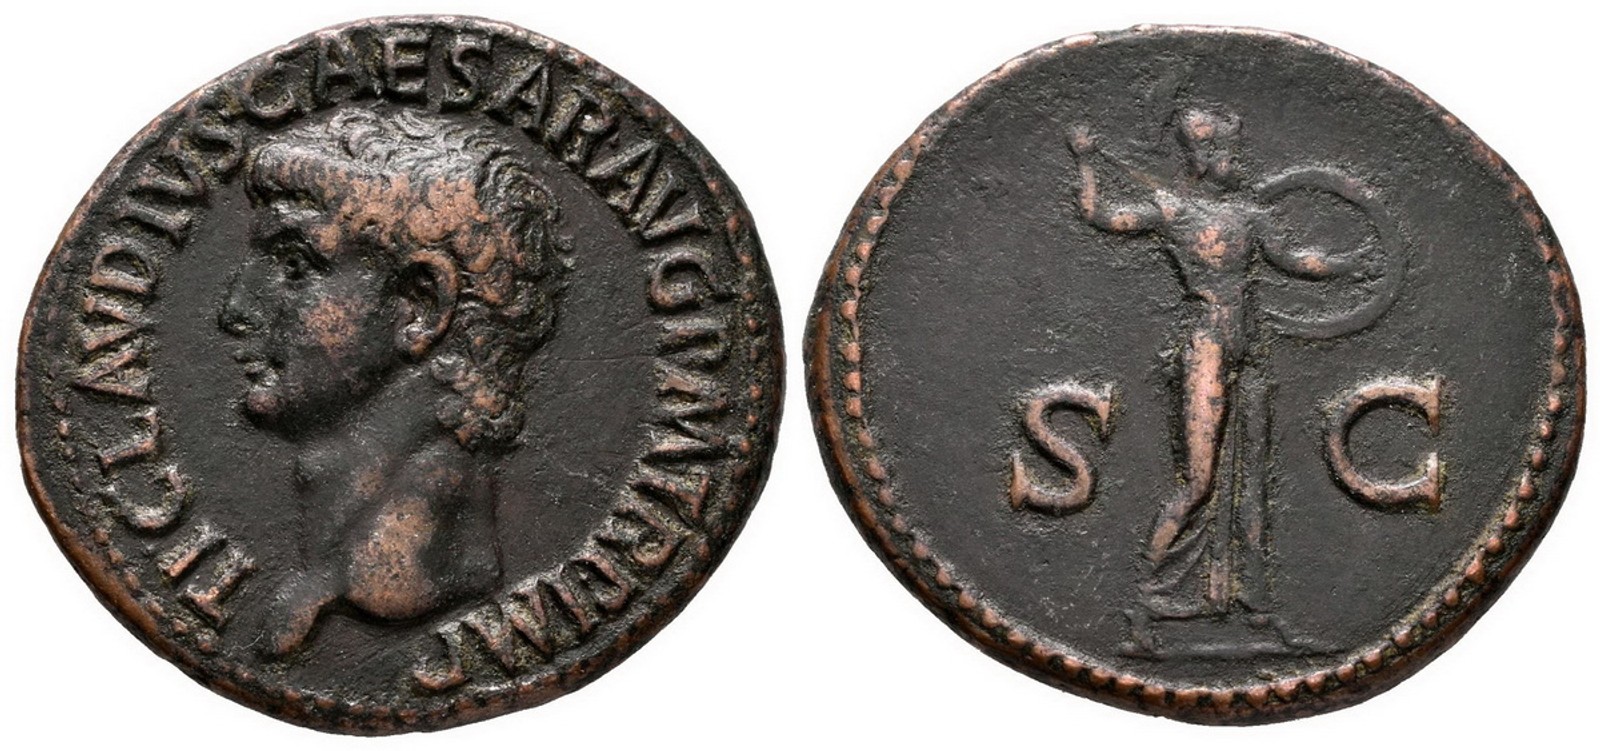 Claudius, 41 - 54